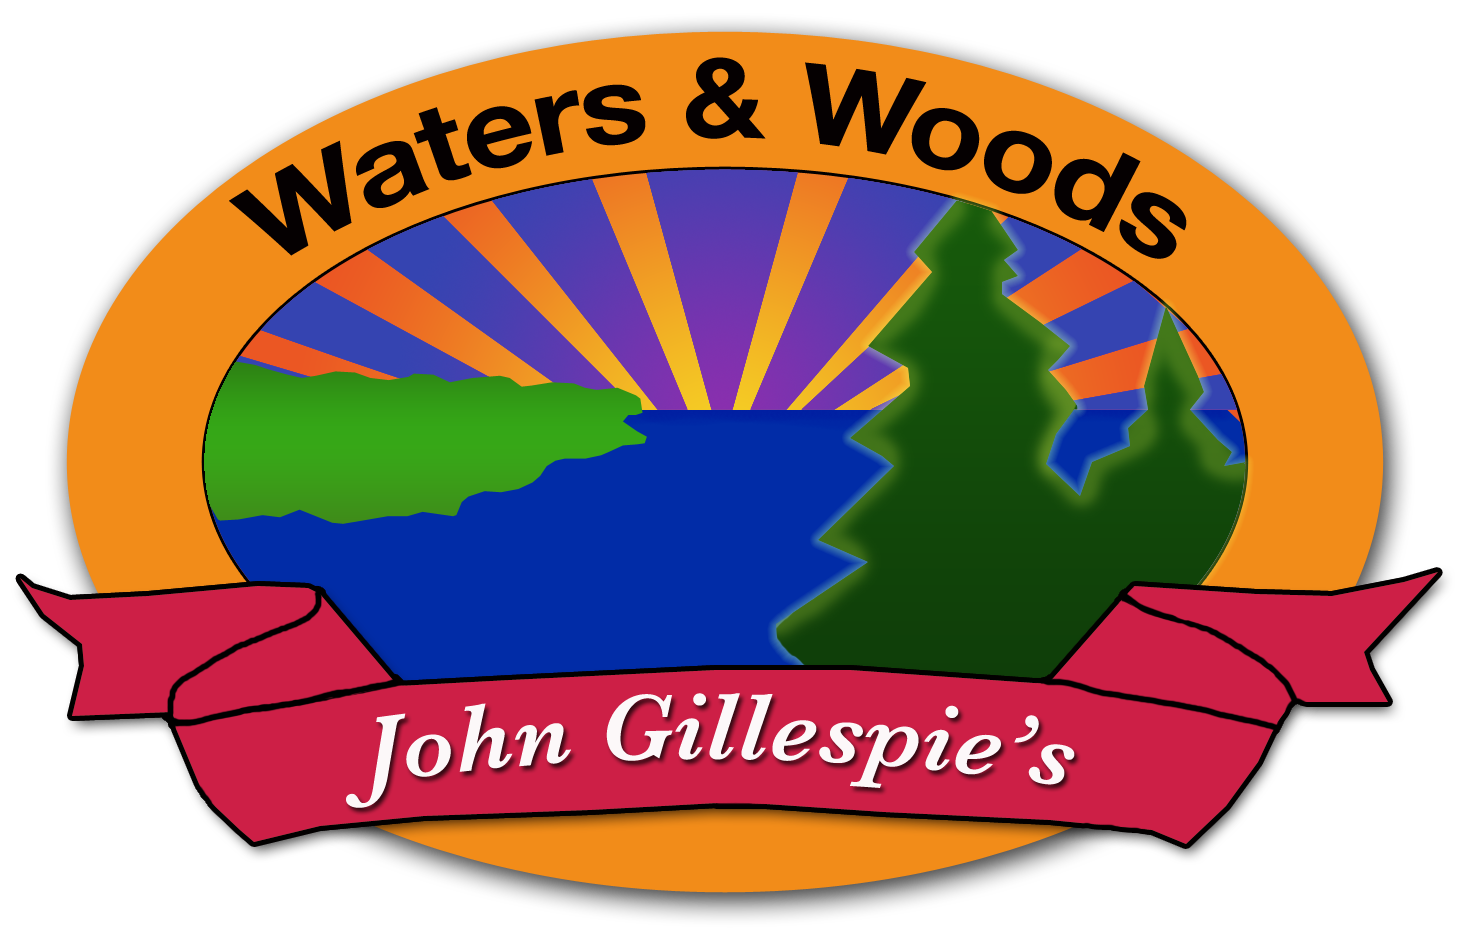 John Gillespie's Waters & Woods